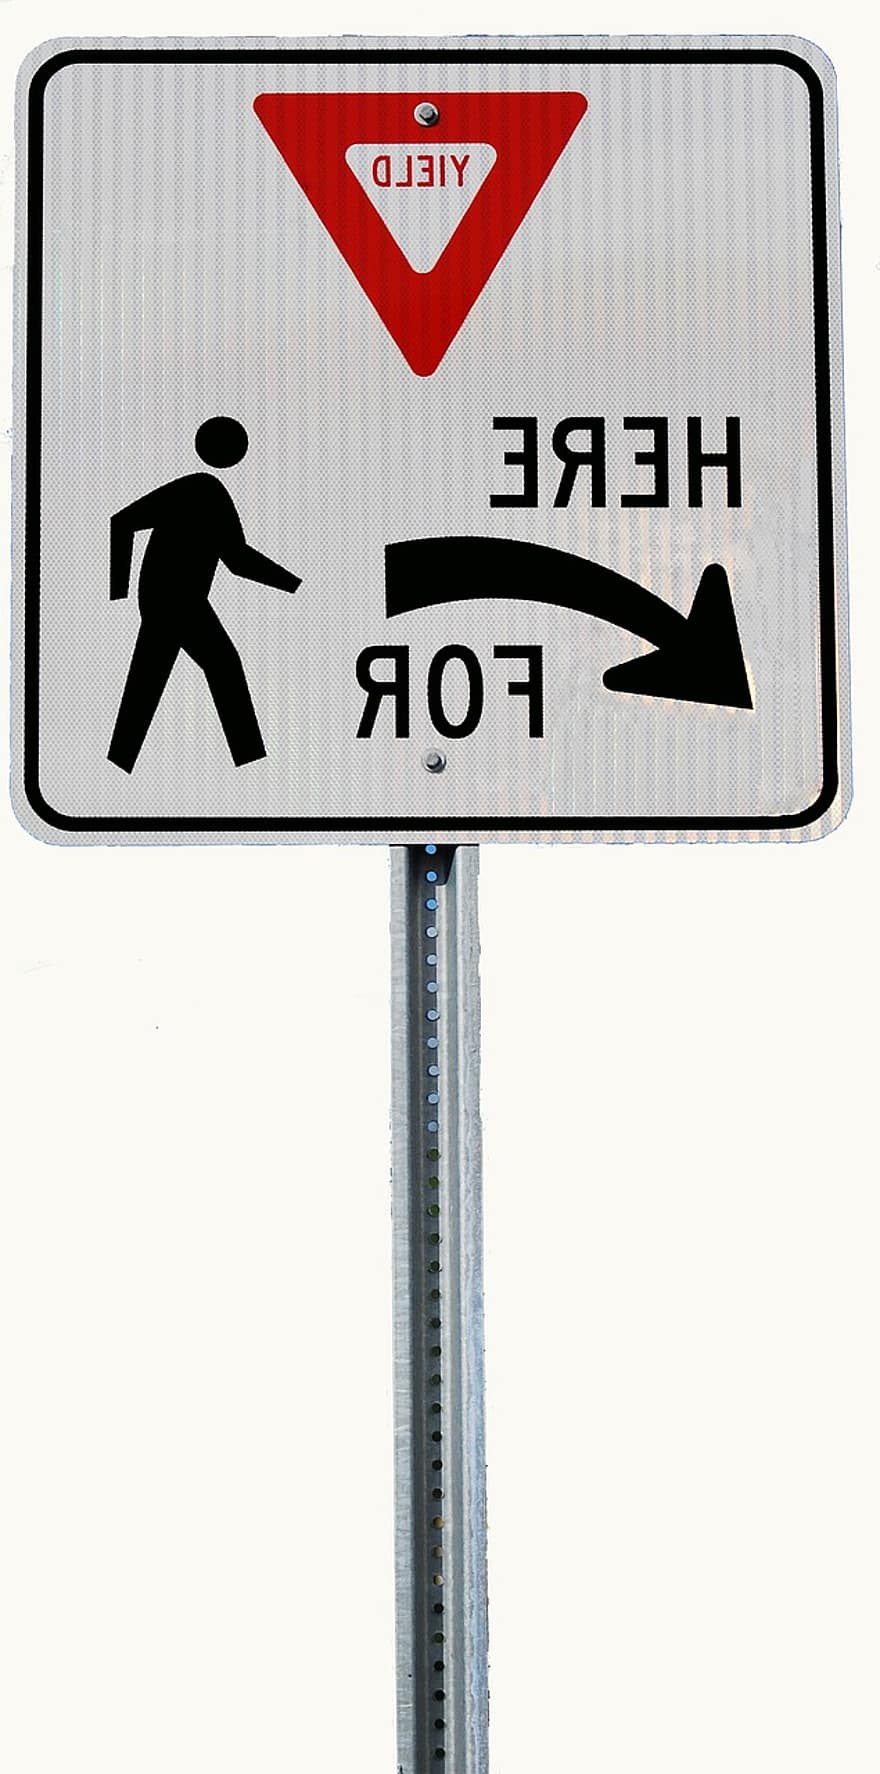 tanda hasil, rambu lalu lintas, rambu lalulintas, tanda jalan, peringatan, tanda, tanda peringatan, simbol, lalu lintas, tanda arah, arah